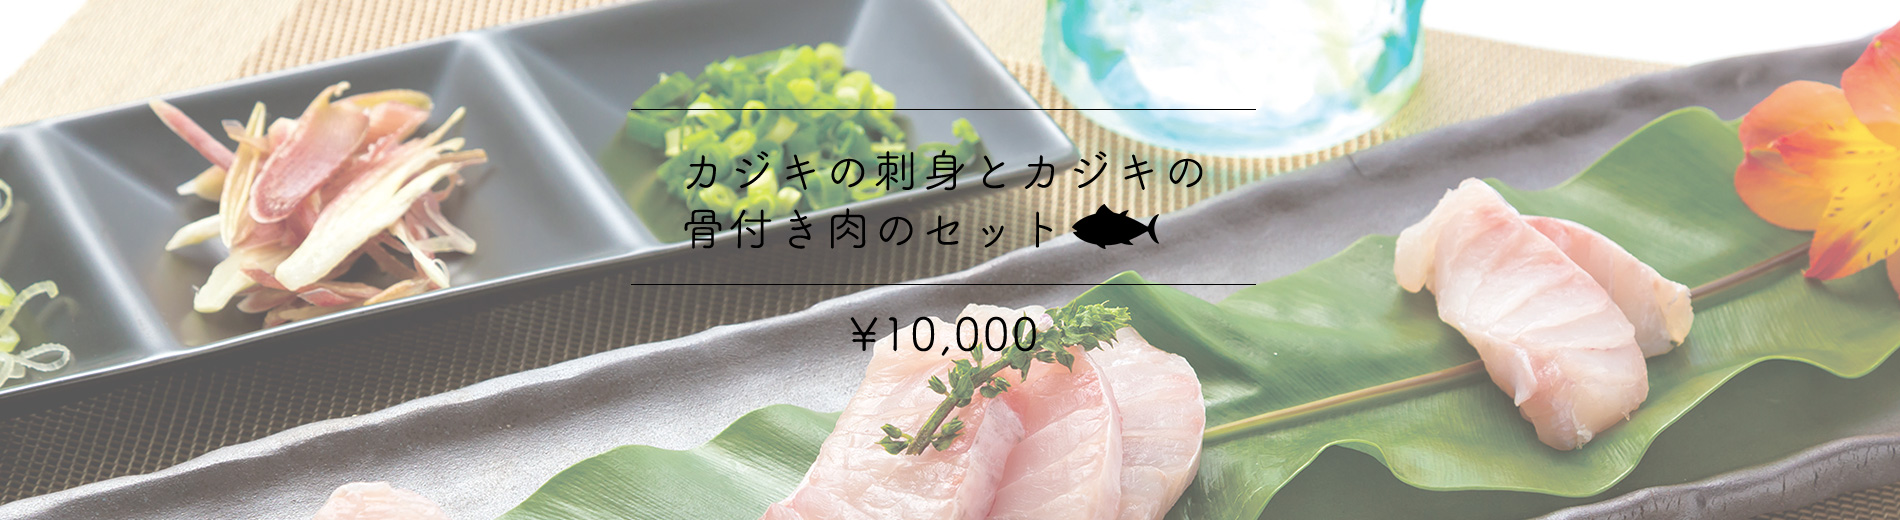 カジキの刺身とカジキの骨付き肉のセット10,000円